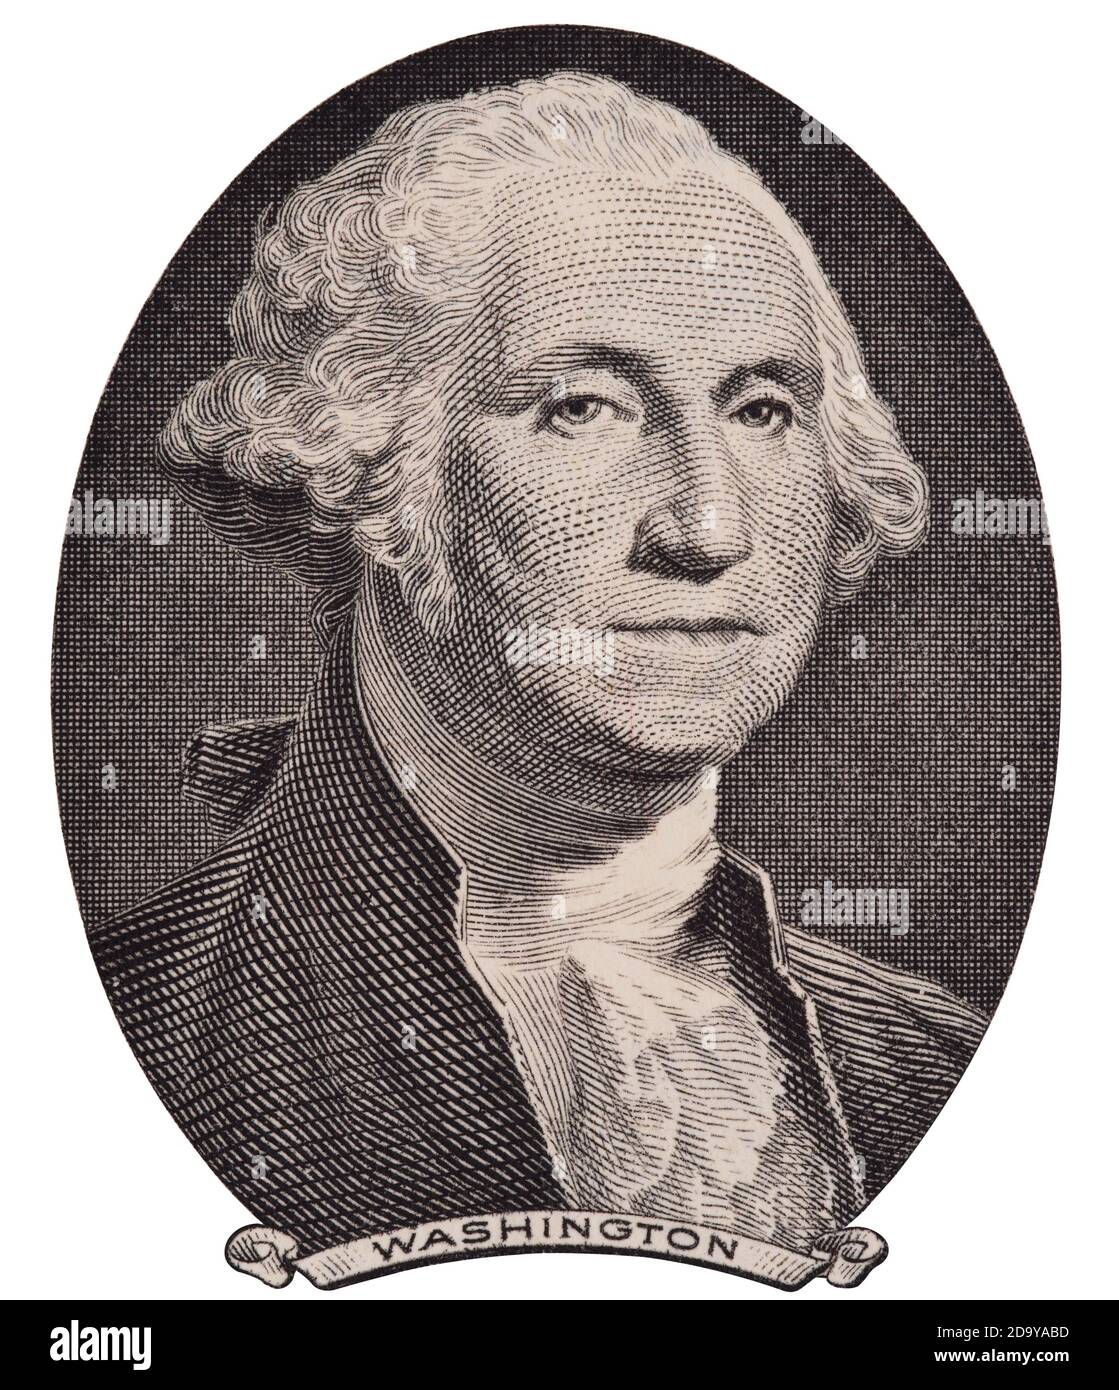 Portrait du président AMÉRICAIN George Washington sur le projet de loi à un dollar macro-isolé, la monnaie des États-unis de gros plan Banque D'Images